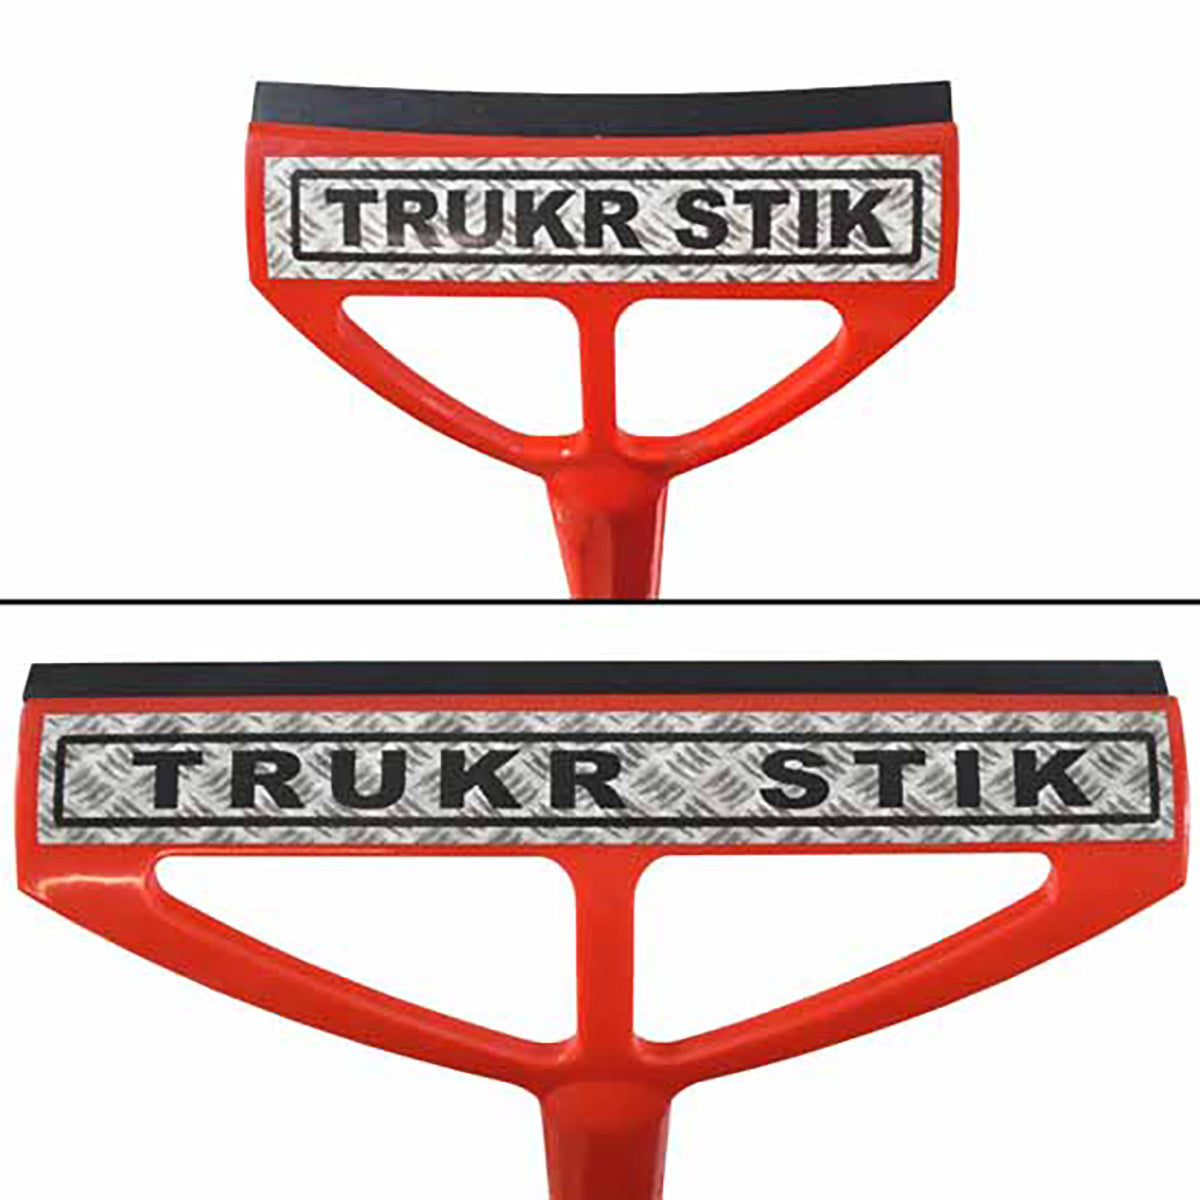 Trukr Stik' mirror squeegee by trucker Shane Schindler